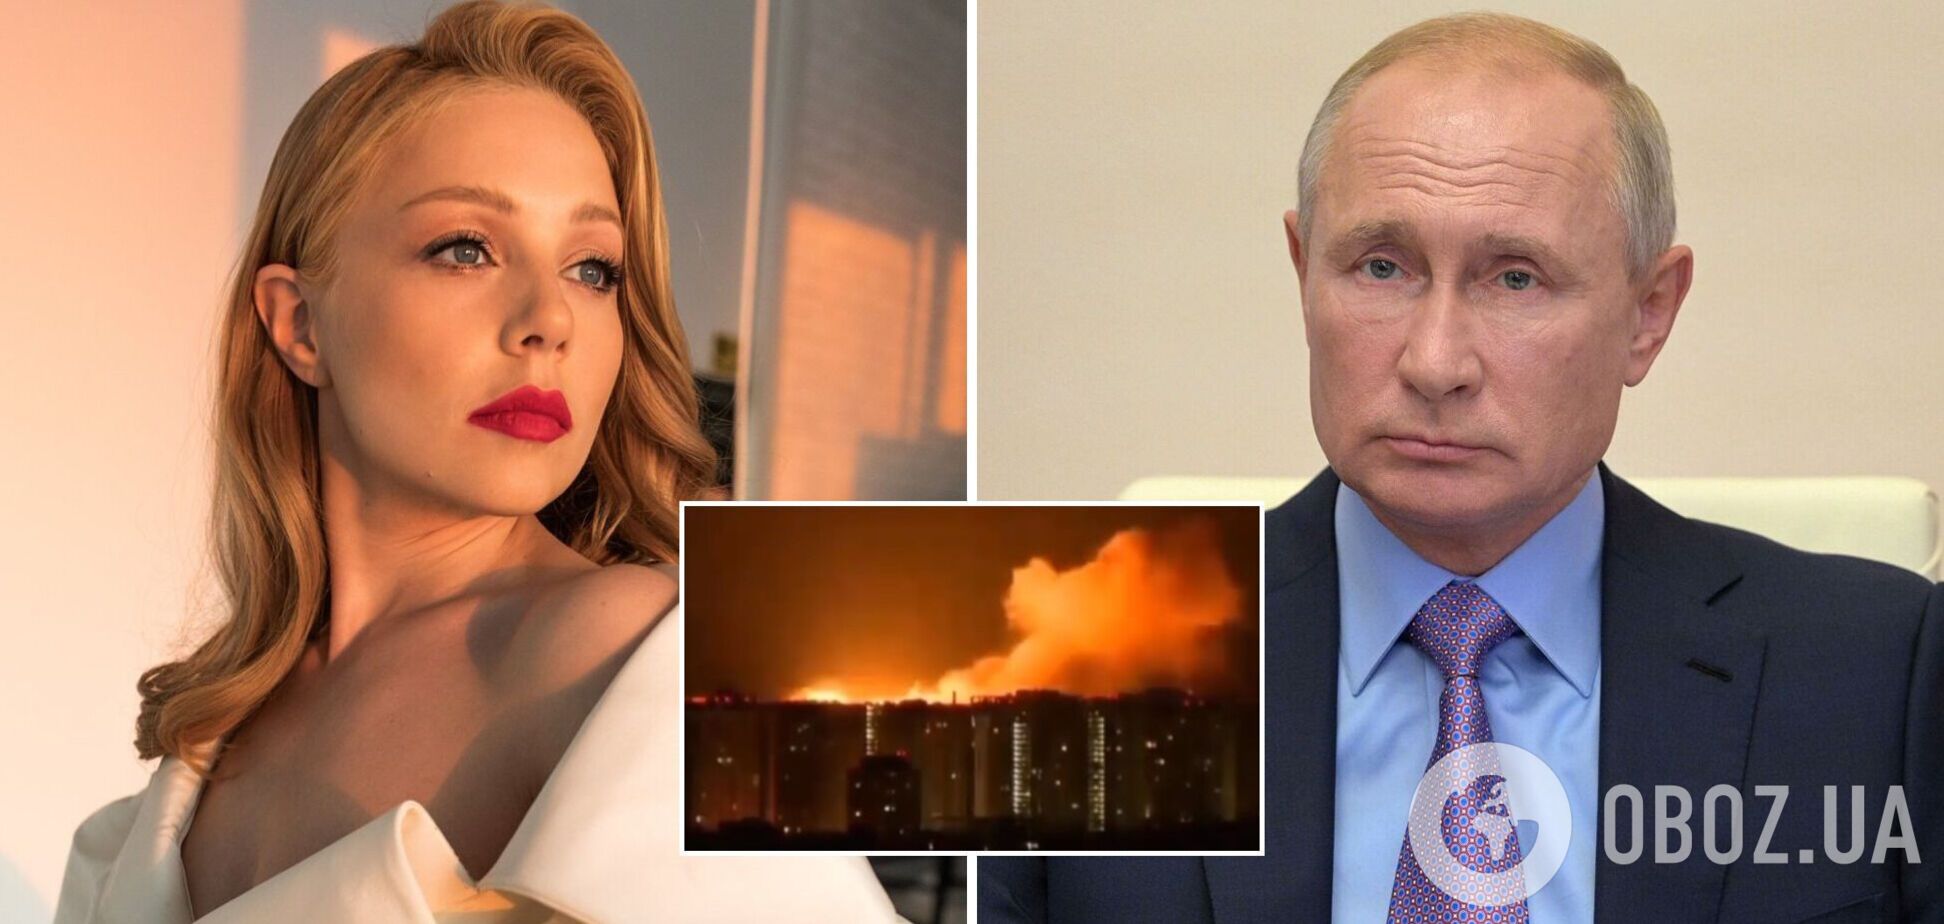 'Ти син диявола, даремно народжене дитя, виродок': Тіна Кароль різко звернулася до Путіна через напад РФ на Україну